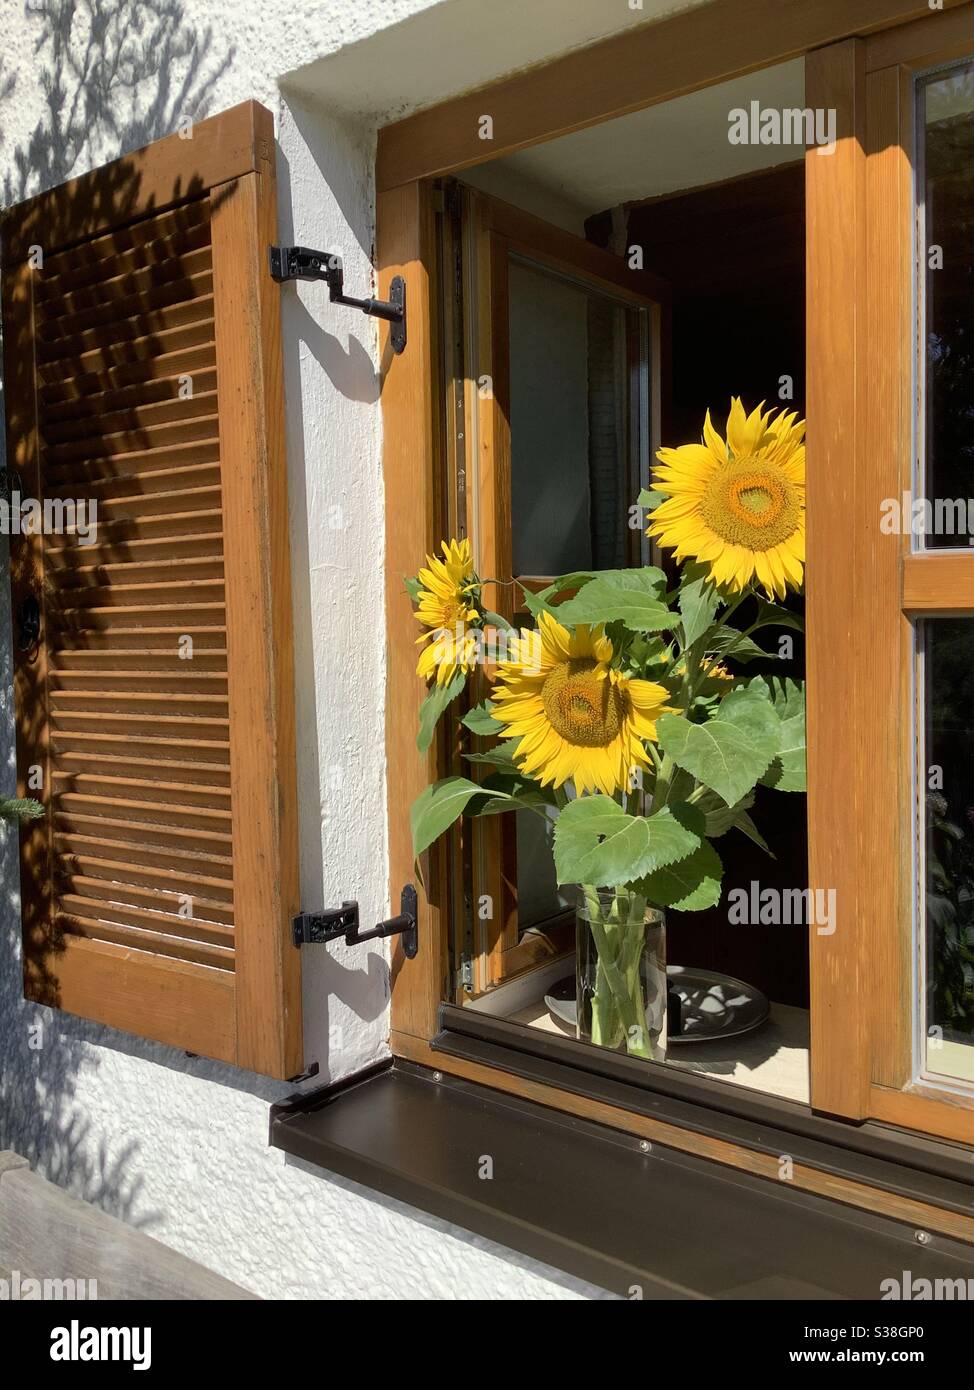 Fenster mit Fensterläden verziert mit einem Bündel von geernteten blühenden Sonnenblumen auf der Fensterbank in einem alten bayerischen Bauernhaus Stockfoto